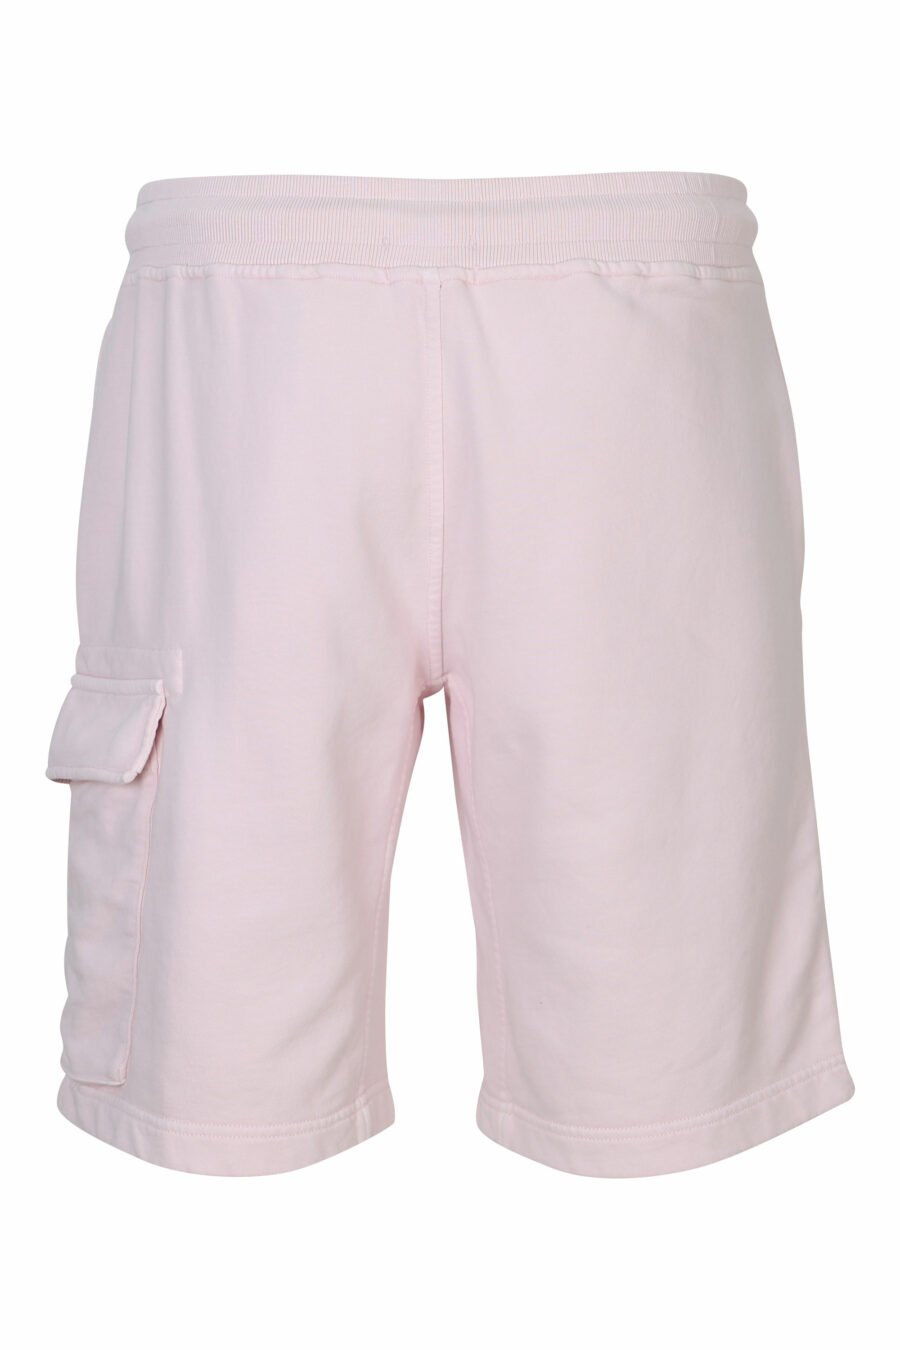 Pantalón de chándal midi rosa estilo cargo con minilogo lente - 7620943731262 2